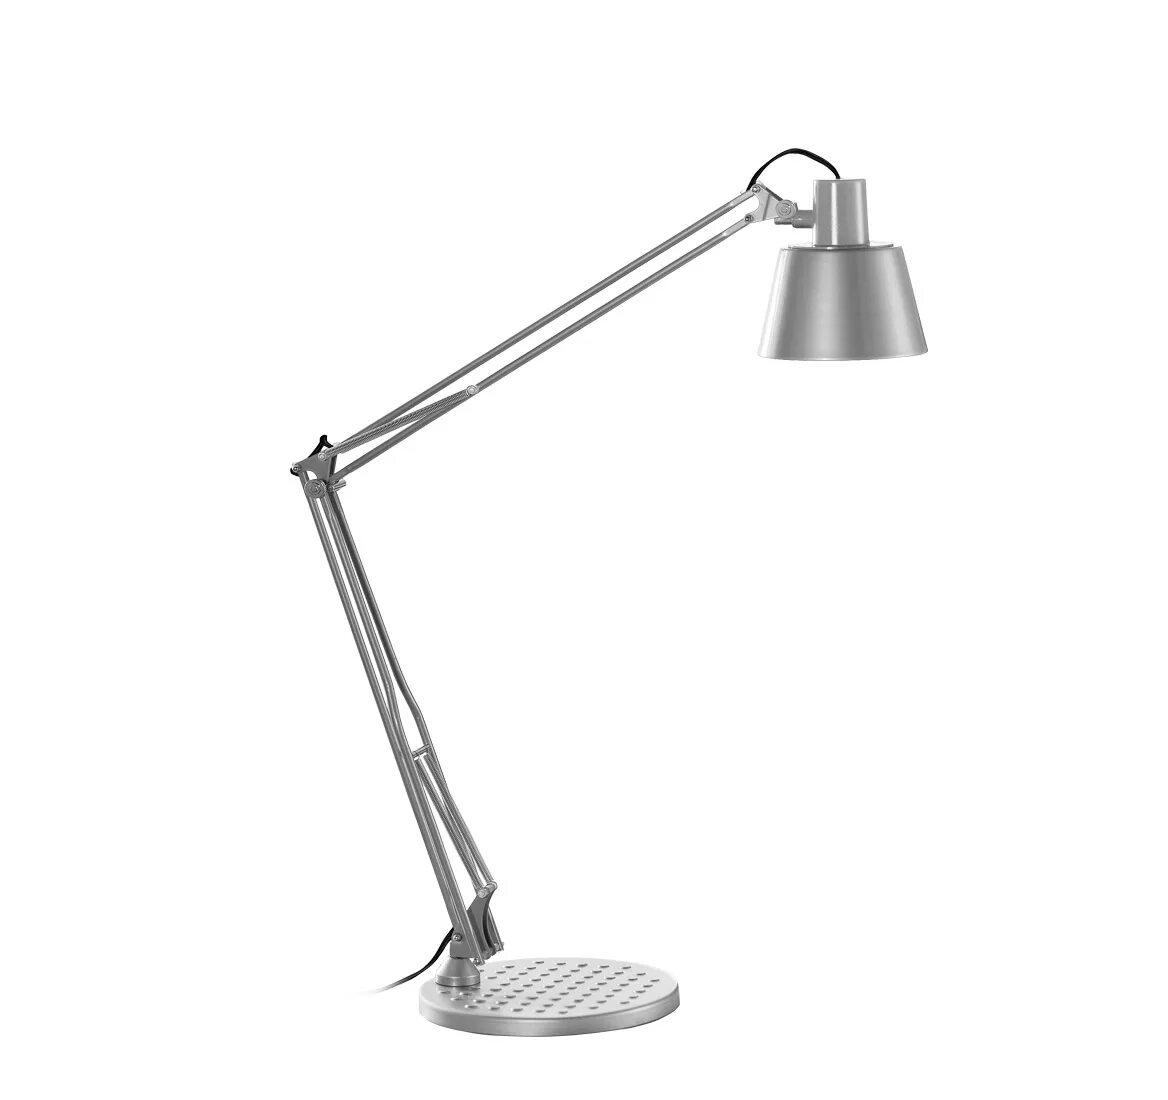 2. Настольная лампа Caimi brevetti s.p.a.. Светильник Caimi. Настольный светильник Mega led от Caimi brevetti, Италия 1843-s. Настольная лампа на штанге классика.